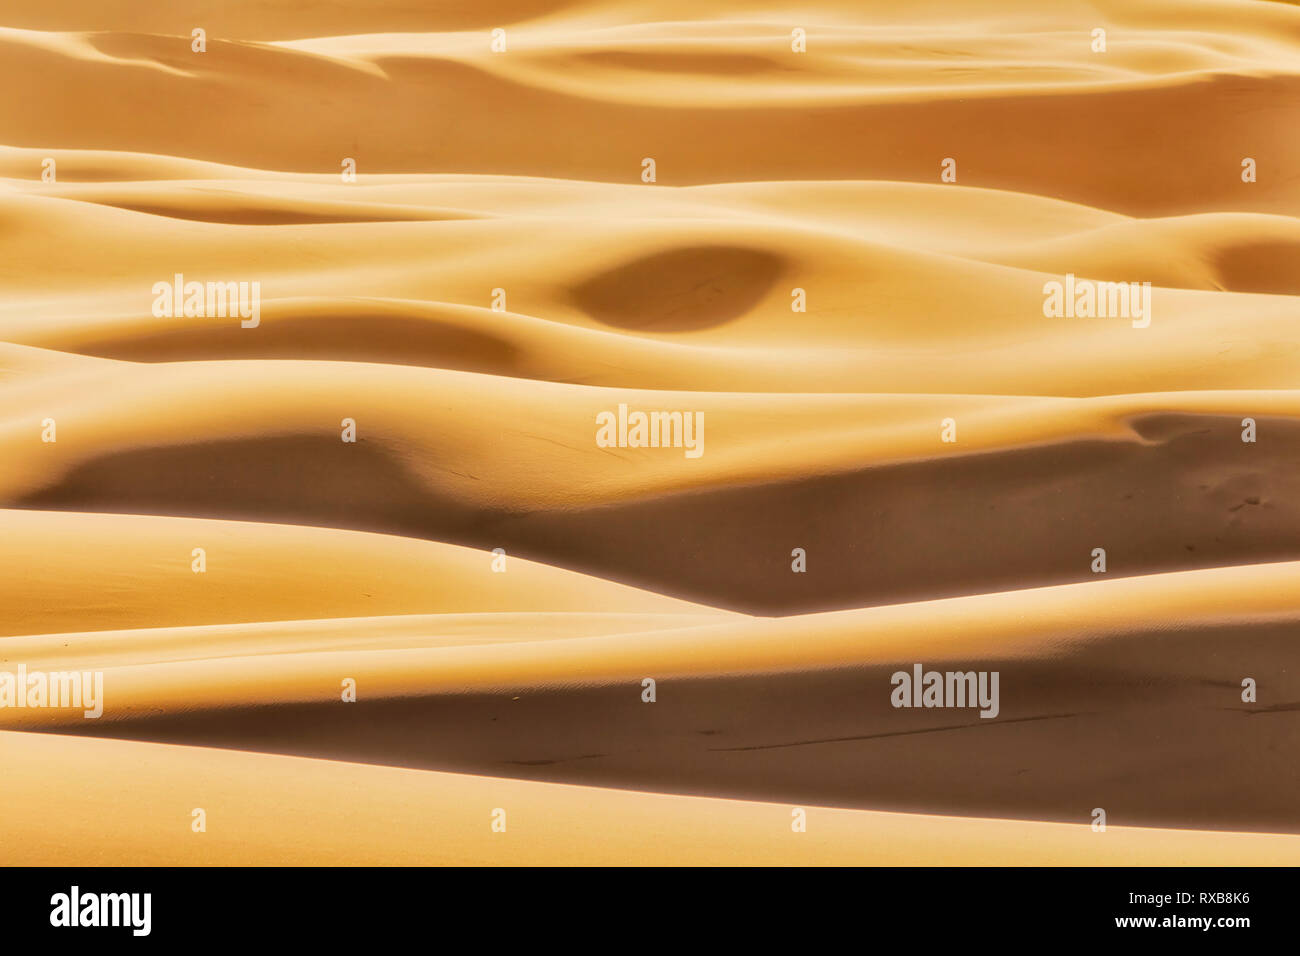 Des formes simples formé par la lumière du soleil et de nuances sur les vagues sans fin des dunes de sable dans les zones arides désert sans vie d'Australian Pacific coast à Stockton Beach. Banque D'Images